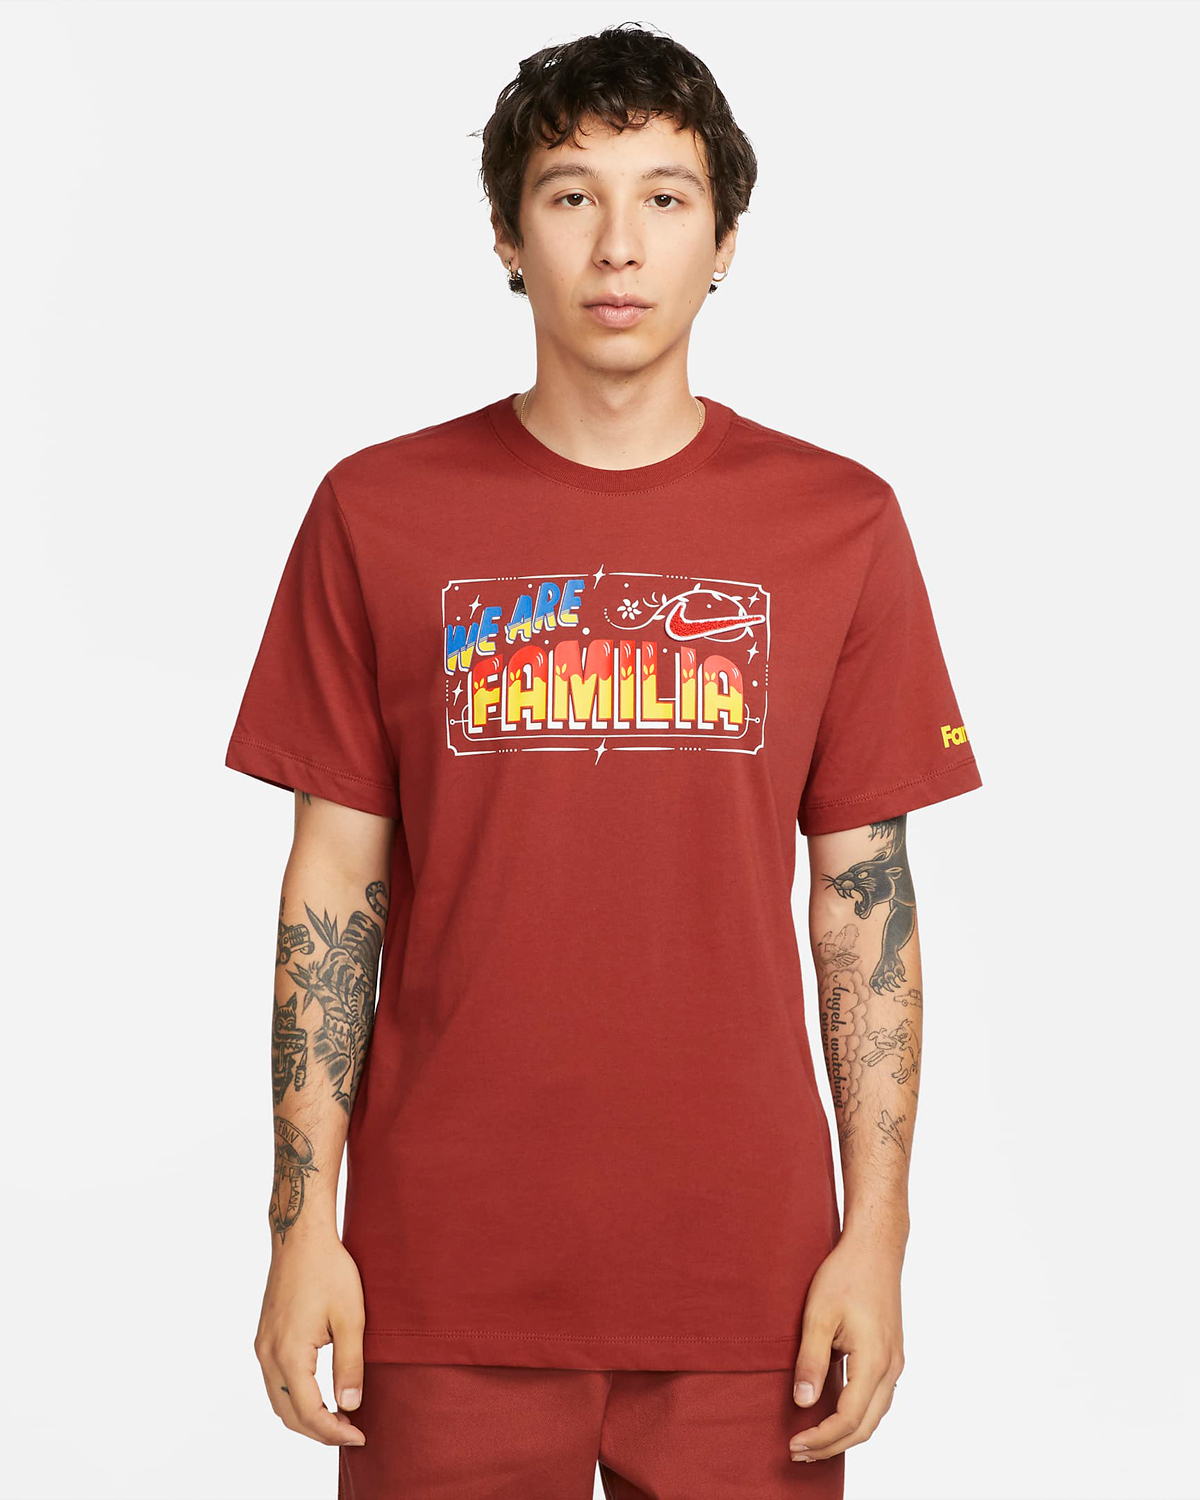 Nike-Somos-Familia-T-Shirt